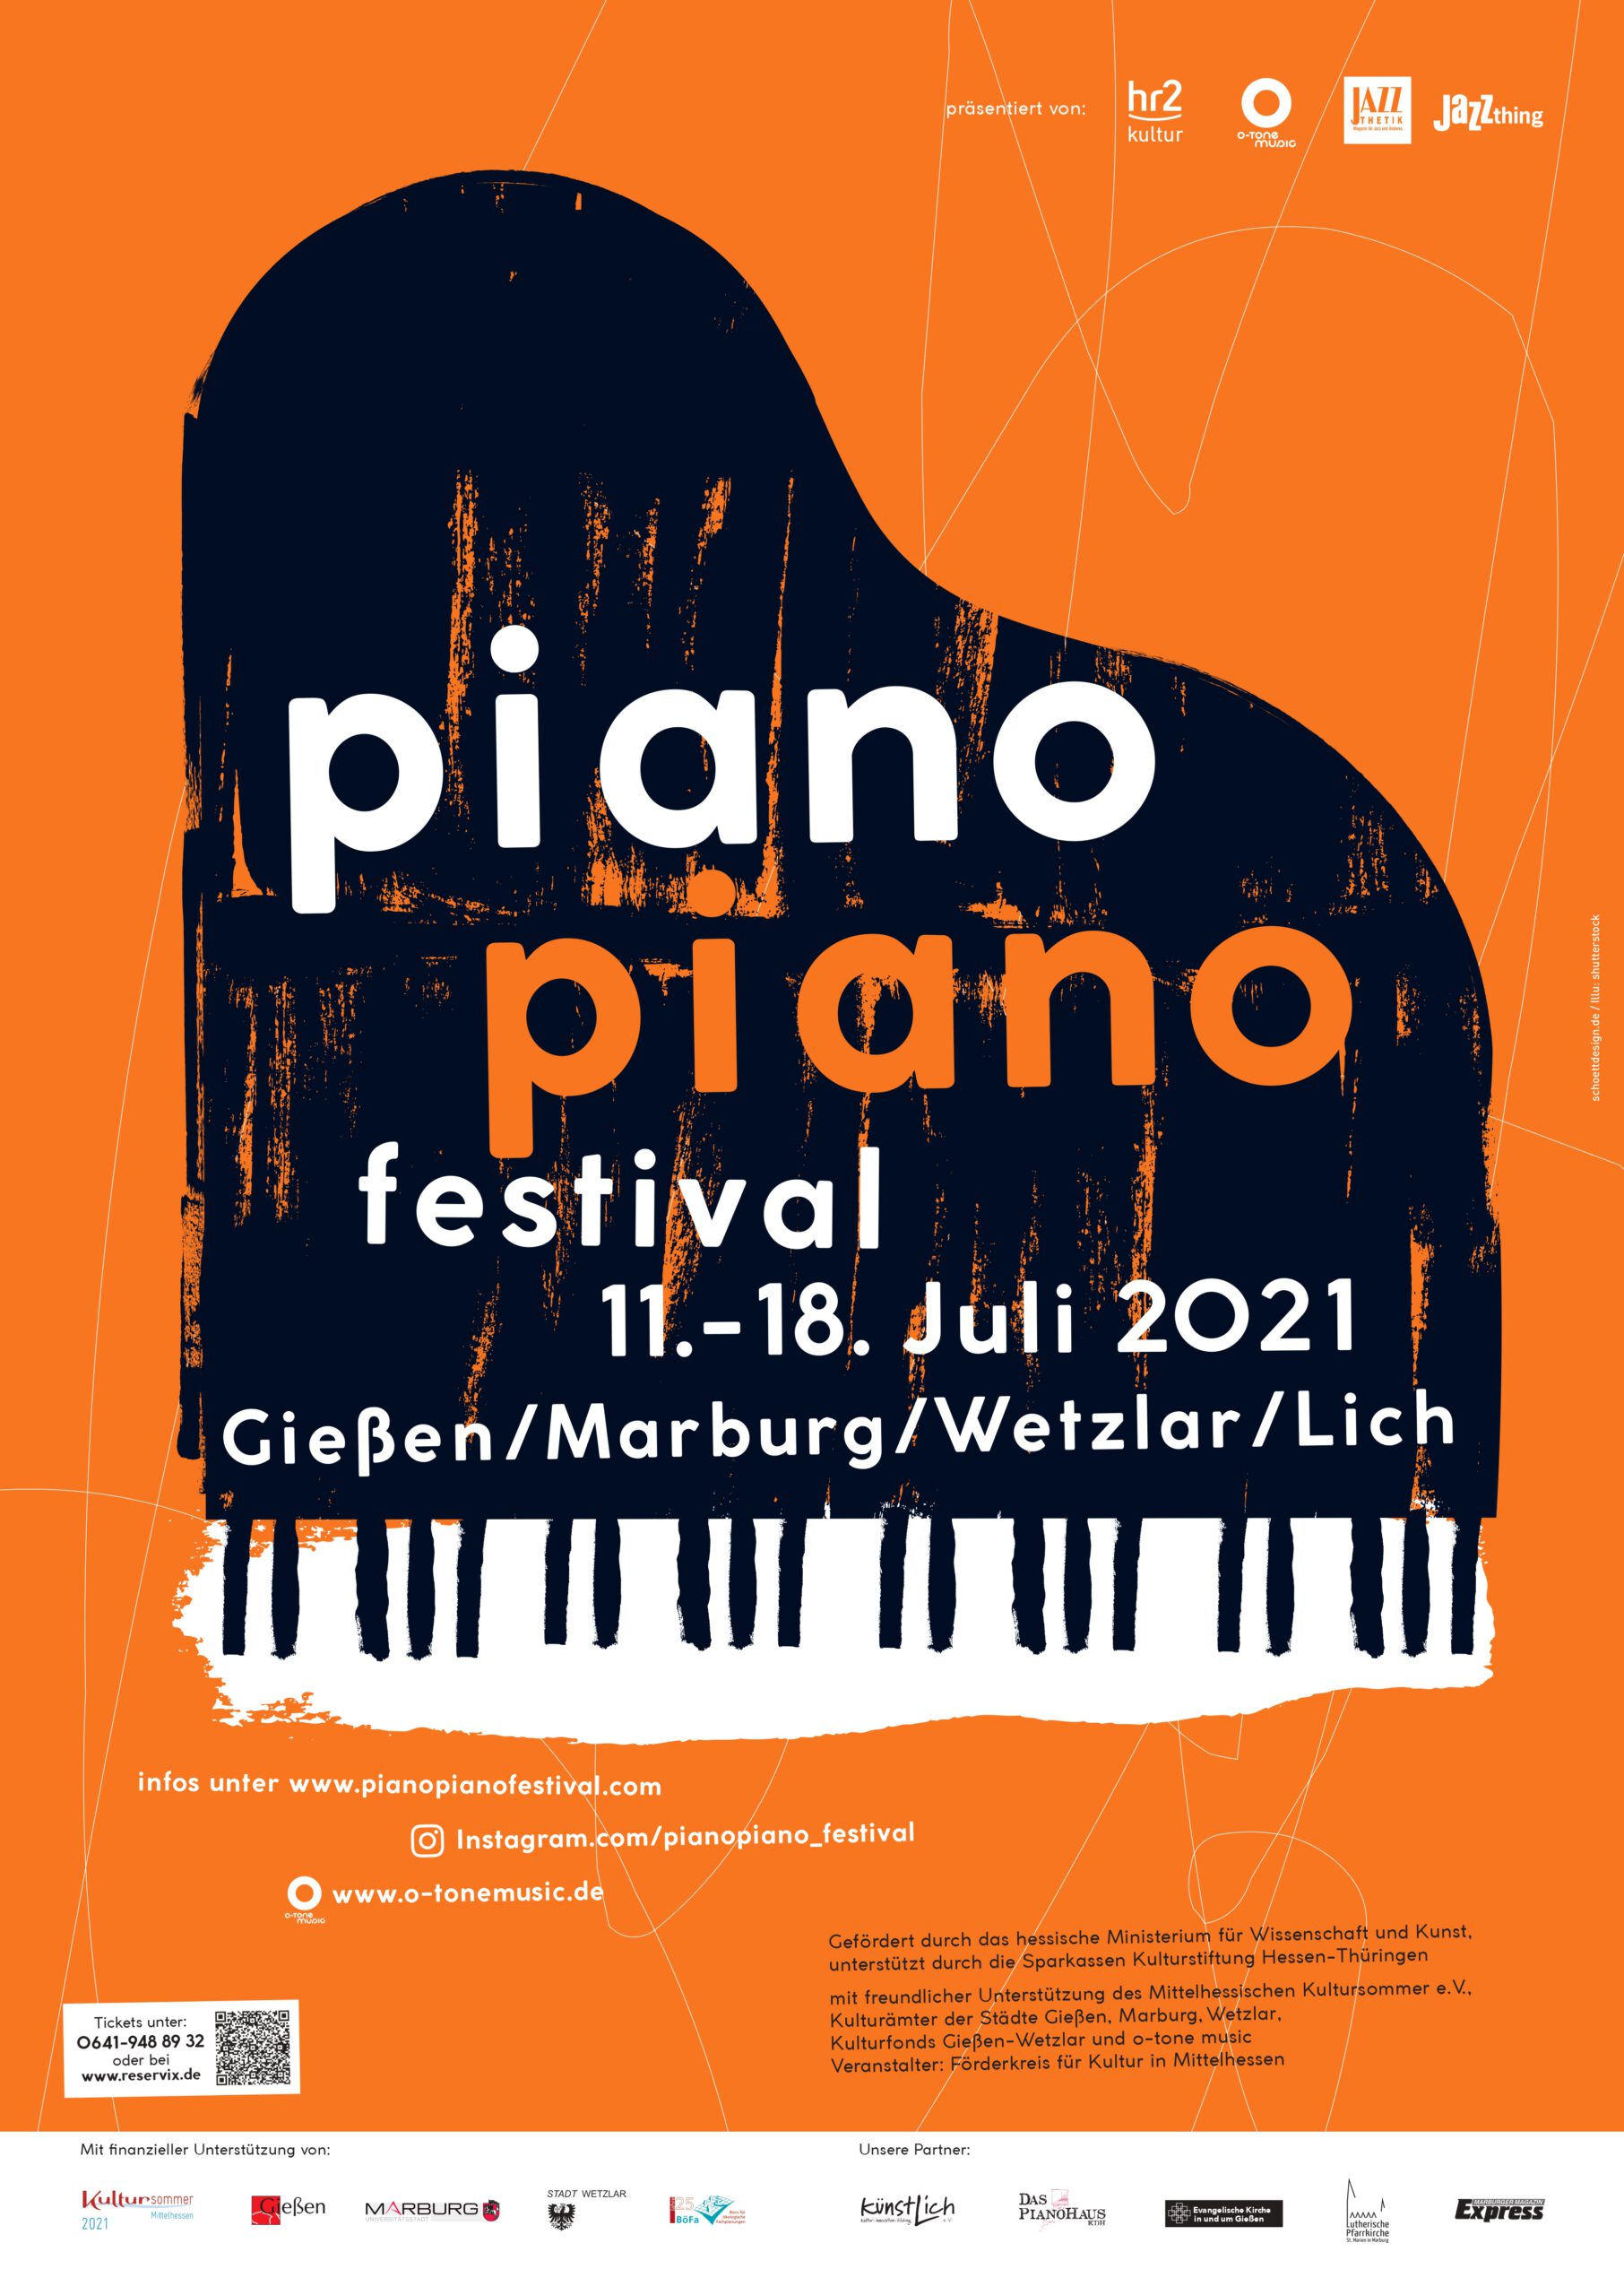 Piano Piano Festival Infos und Tickets otone music